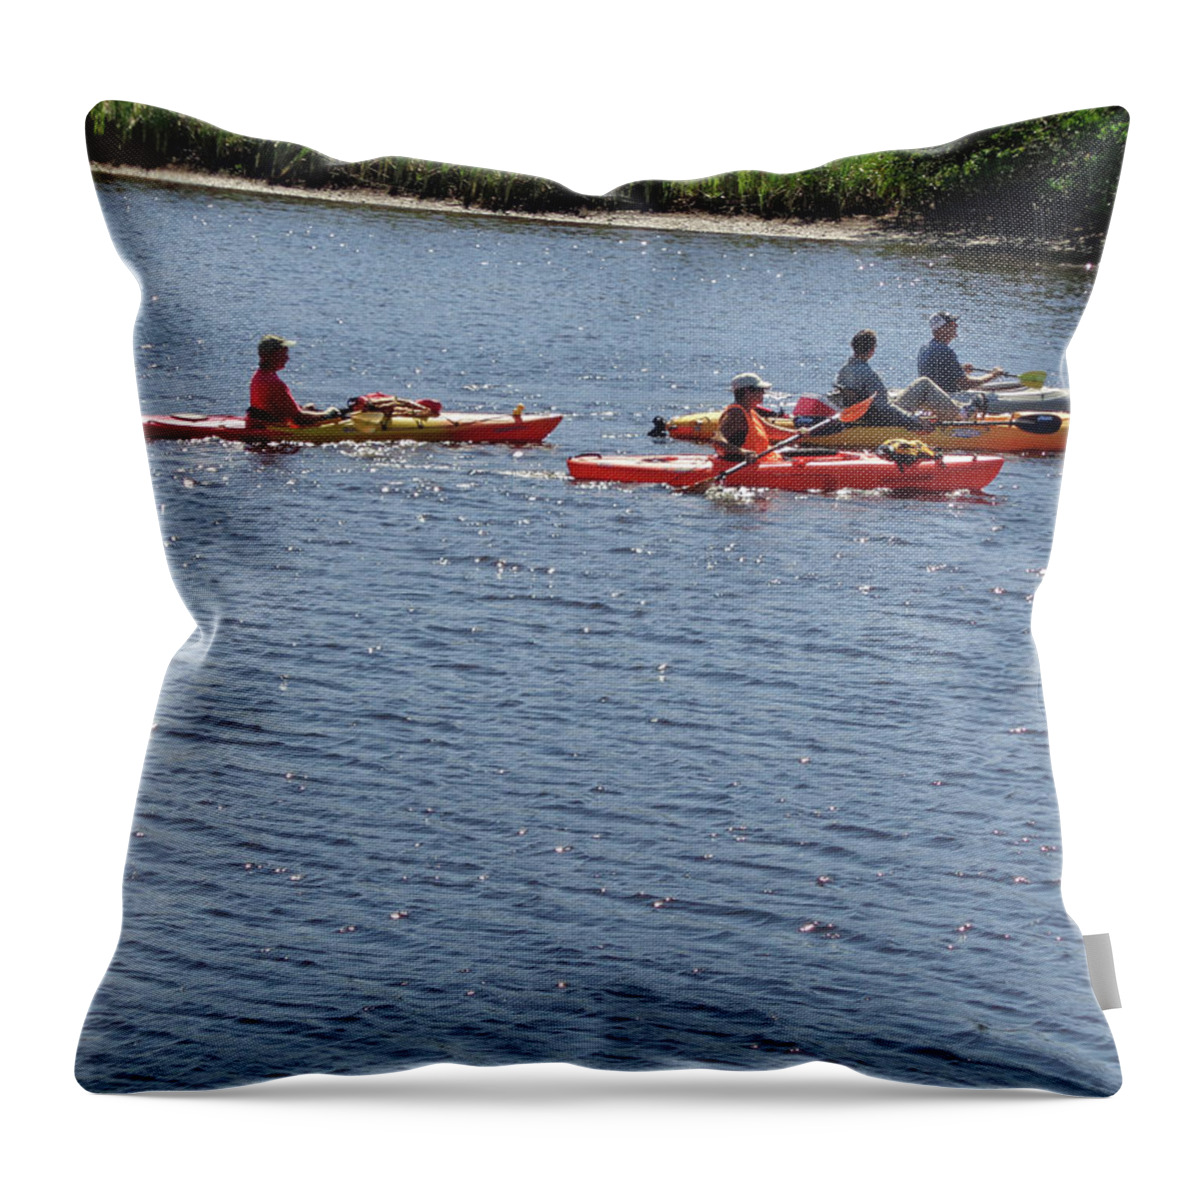 Kayak Throw Pillow featuring the photograph Kayaks by John Mathews